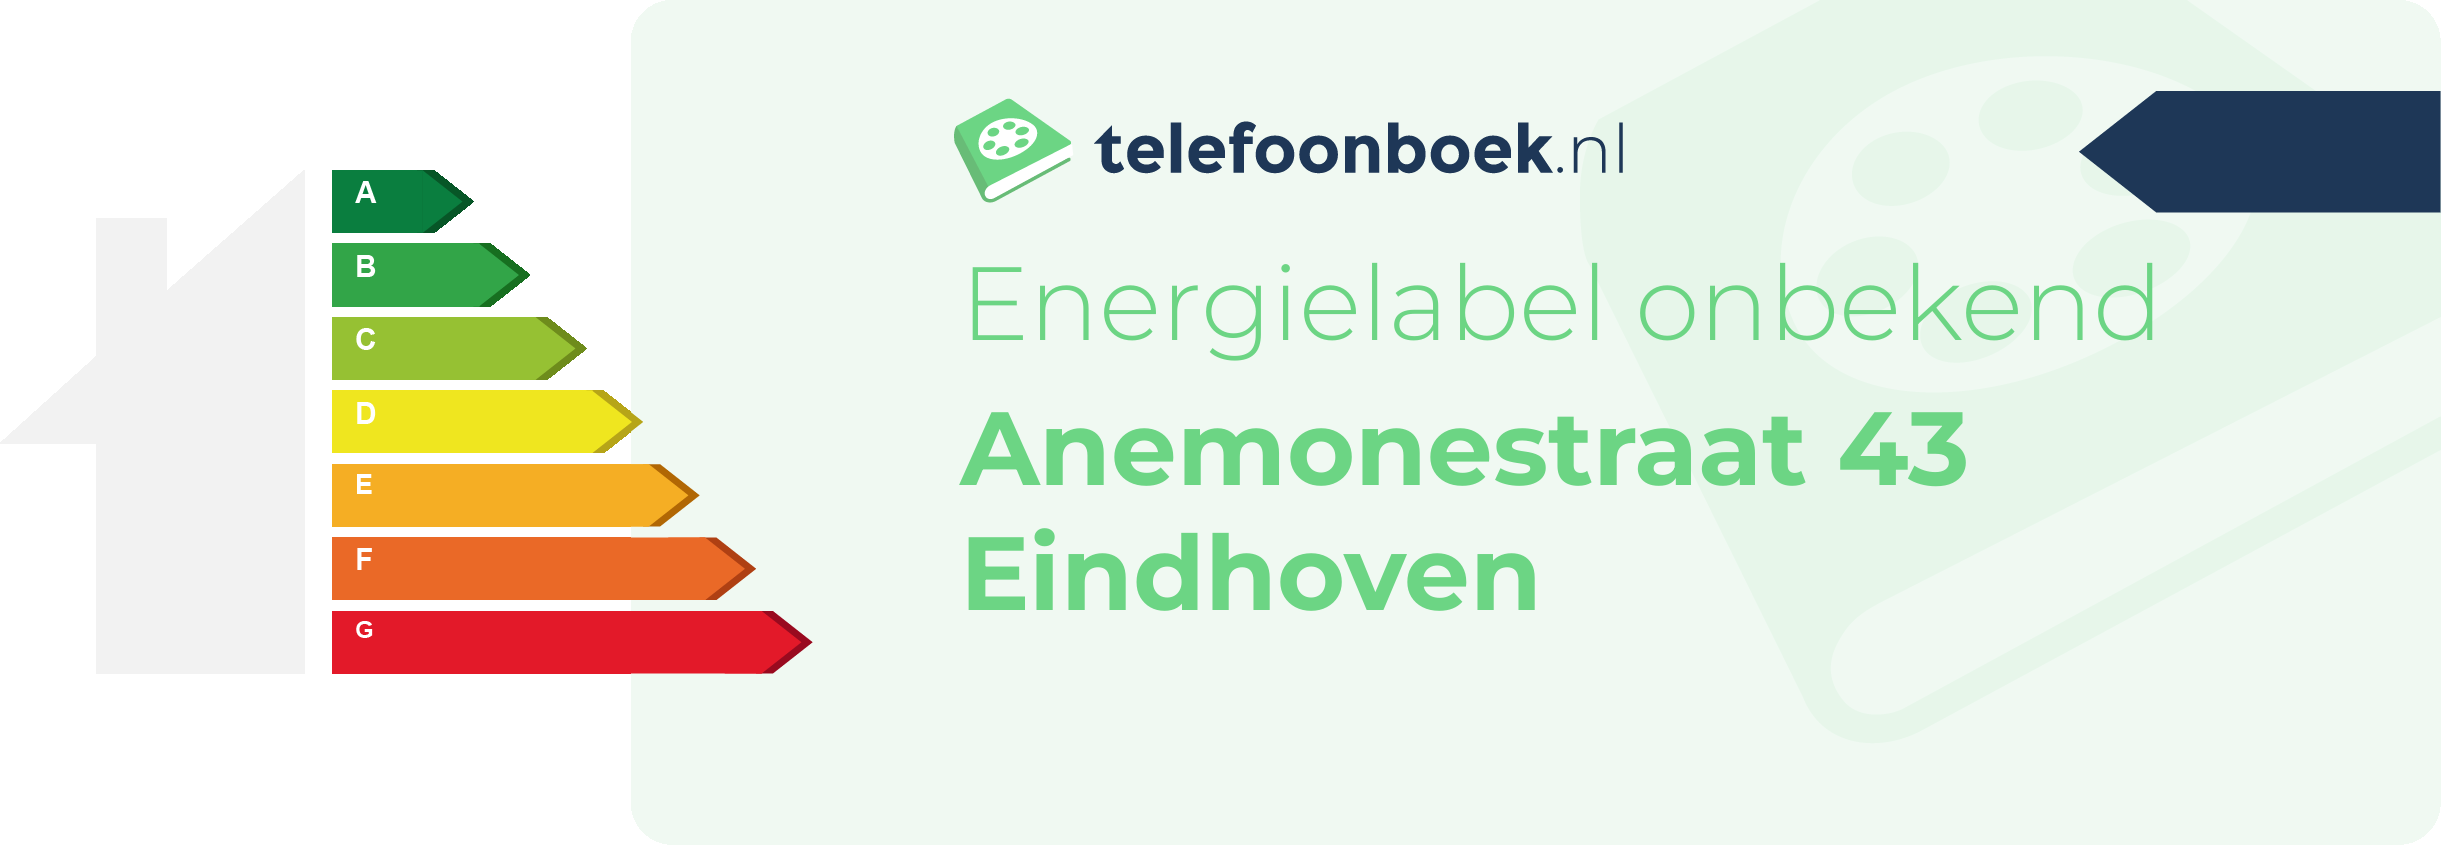 Energielabel Anemonestraat 43 Eindhoven